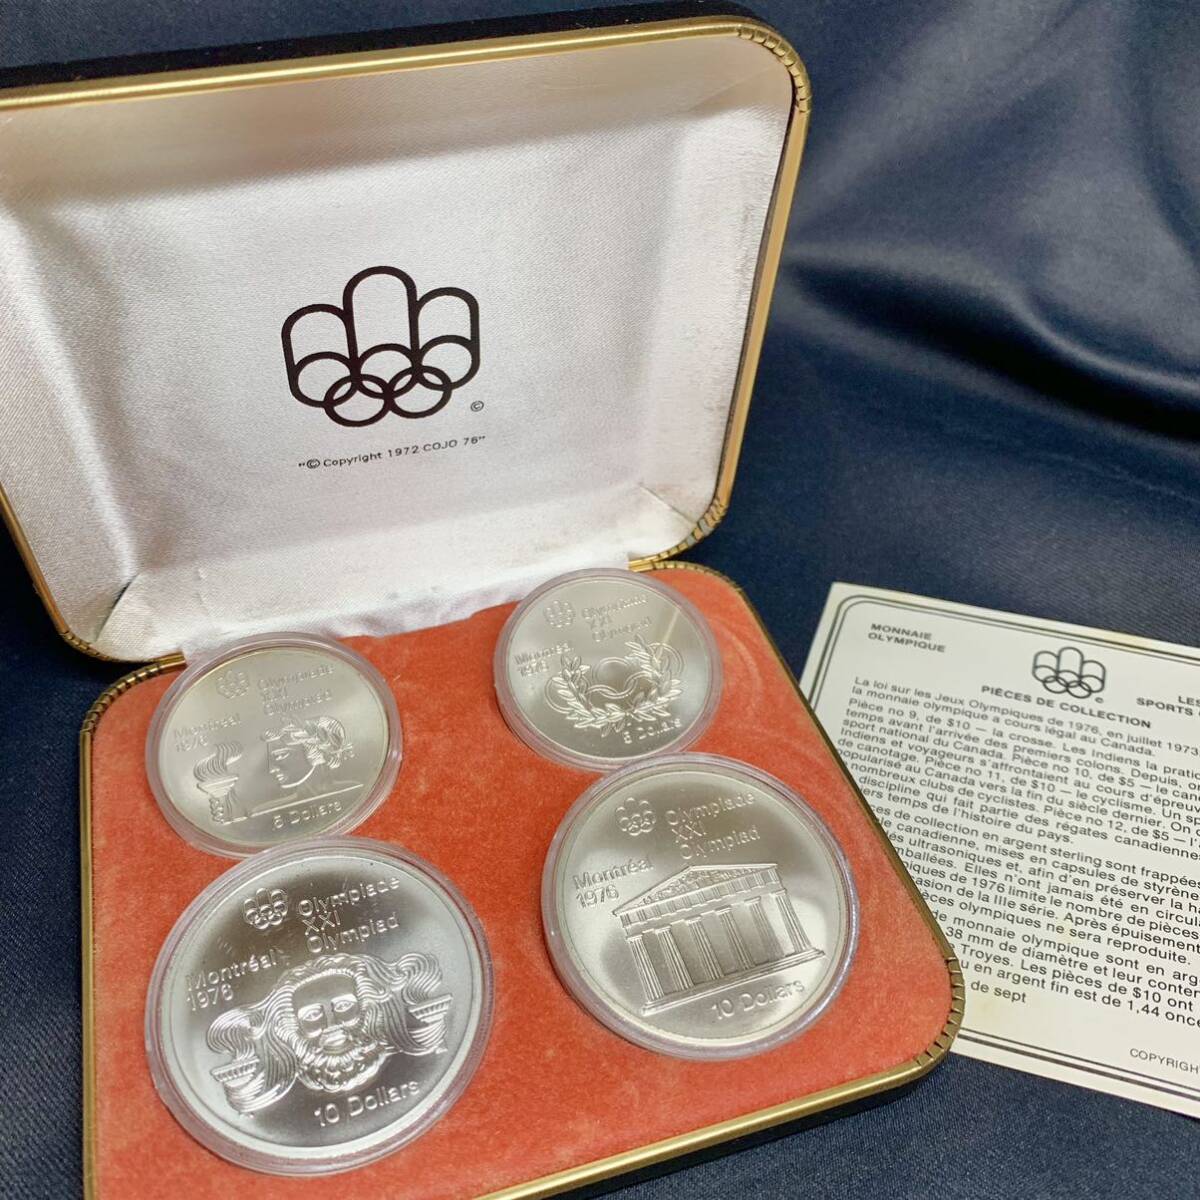 CANADA カナダ Montrealモントリオール オリンピック 1976年 5ドル 10ドル セット 銀貨 記念コイン 純銀 コレクション 希少 ヴィンテージ の画像1